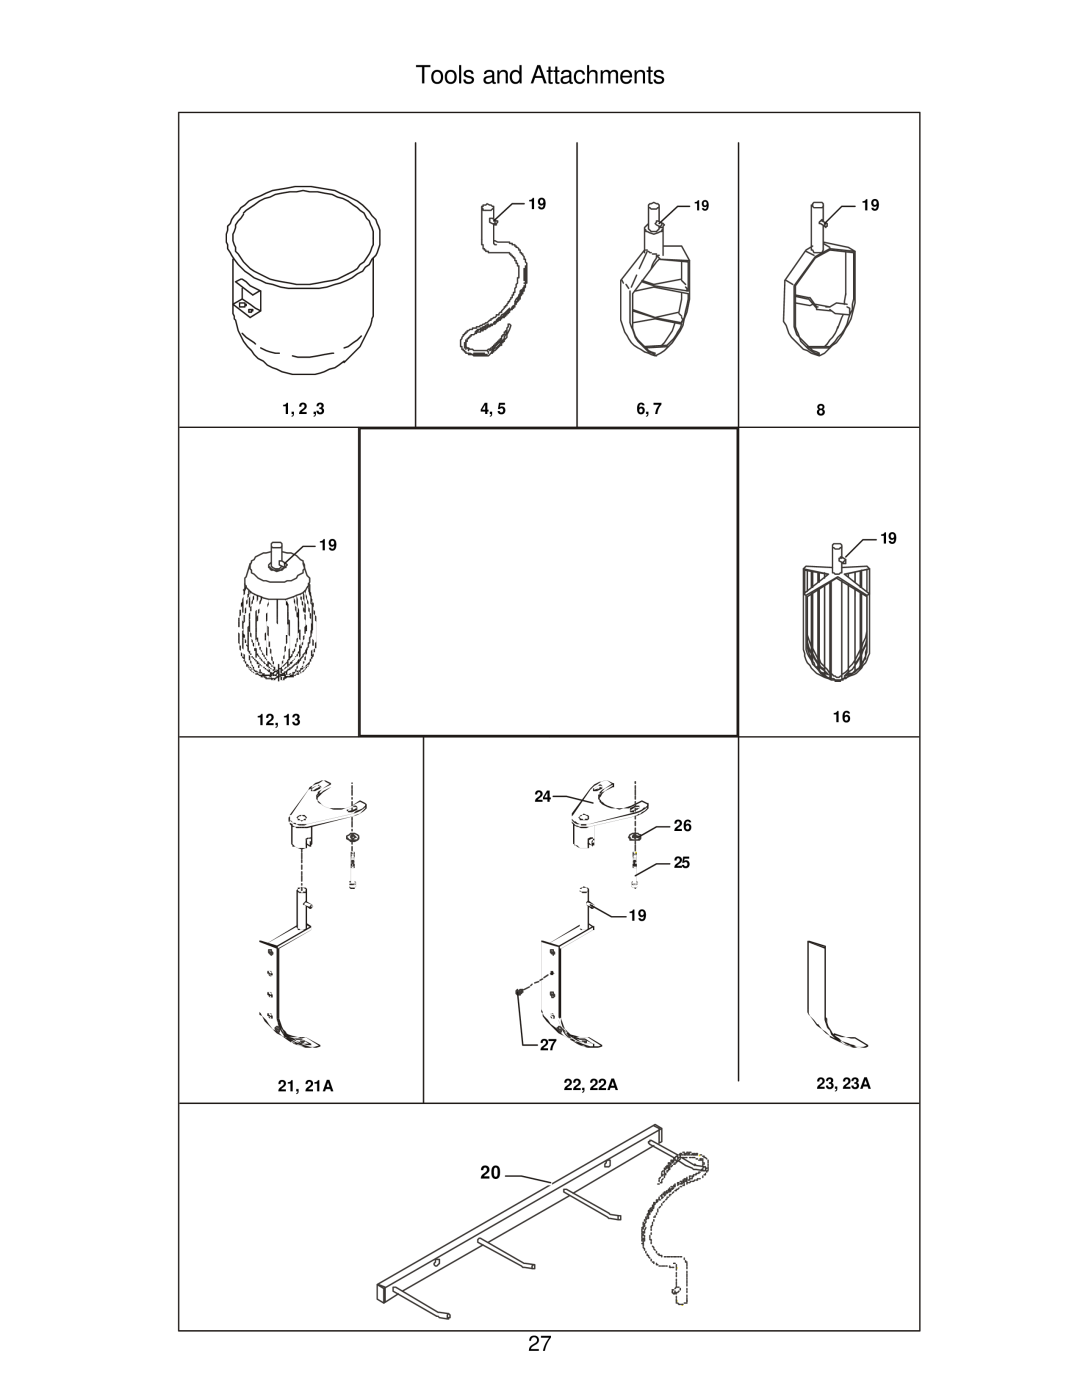 Varimixer J, F manual Tools and Attachments, 1, 2 ,3, 21, 21A, 22, 22A, 23, 23A 